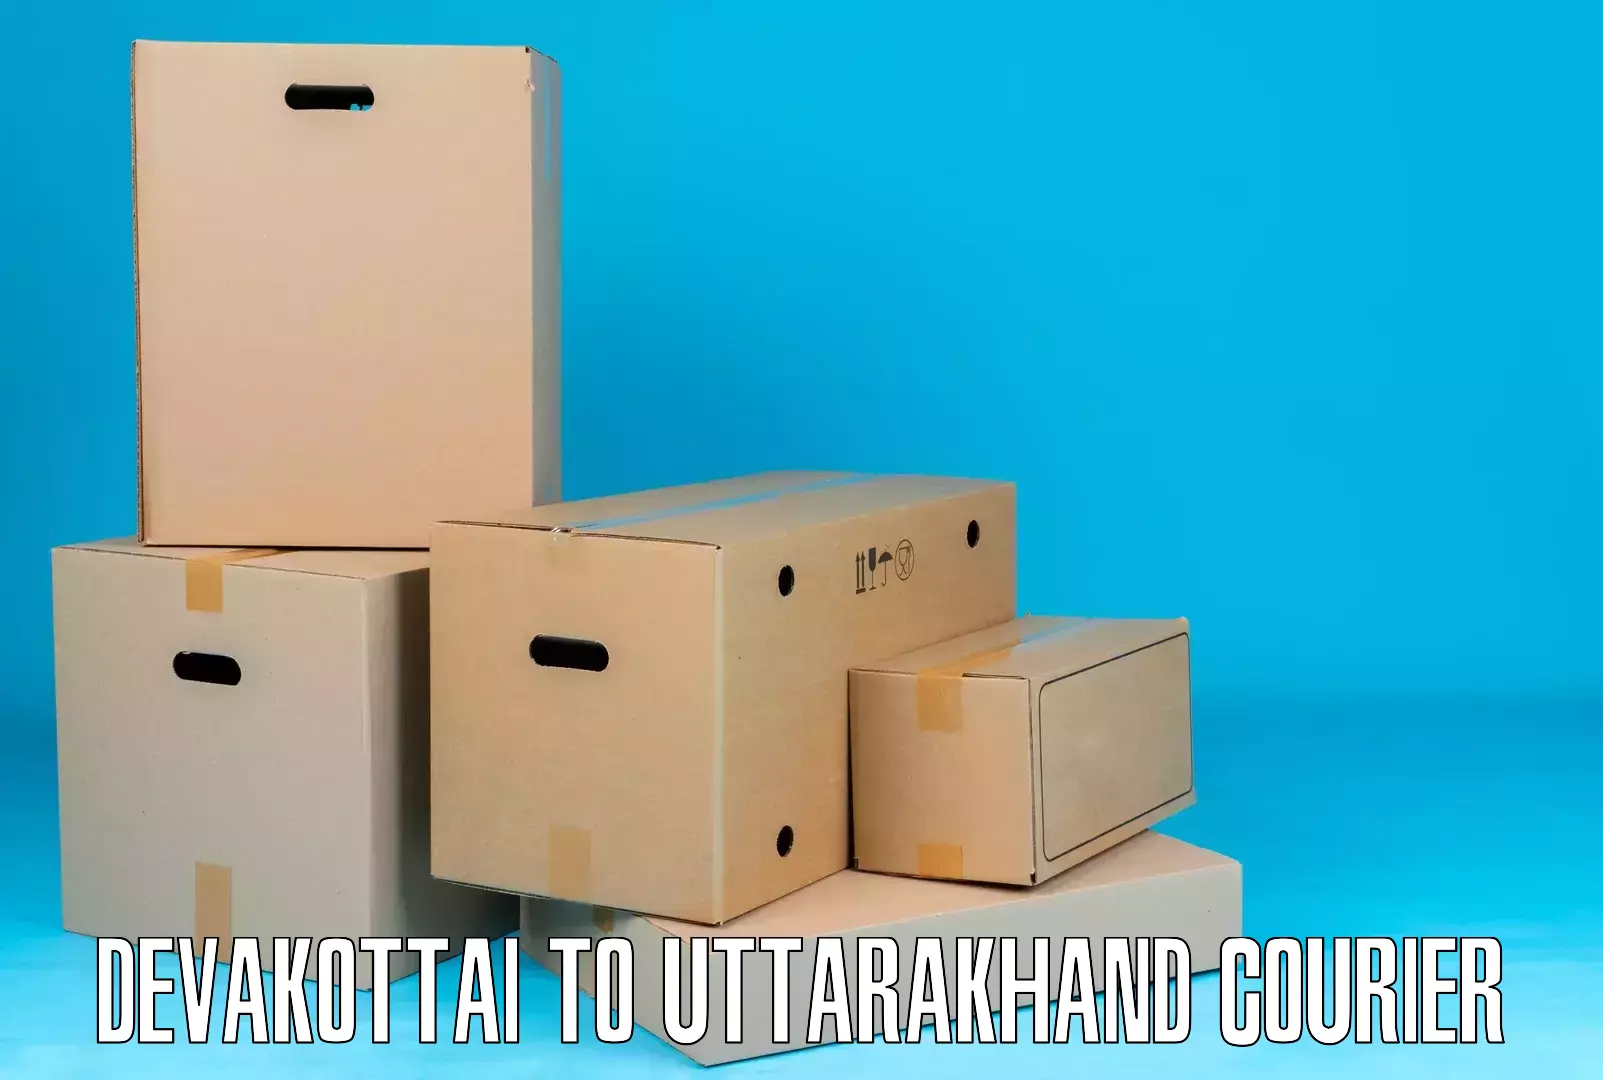 Efficient parcel delivery Devakottai to Rishikesh